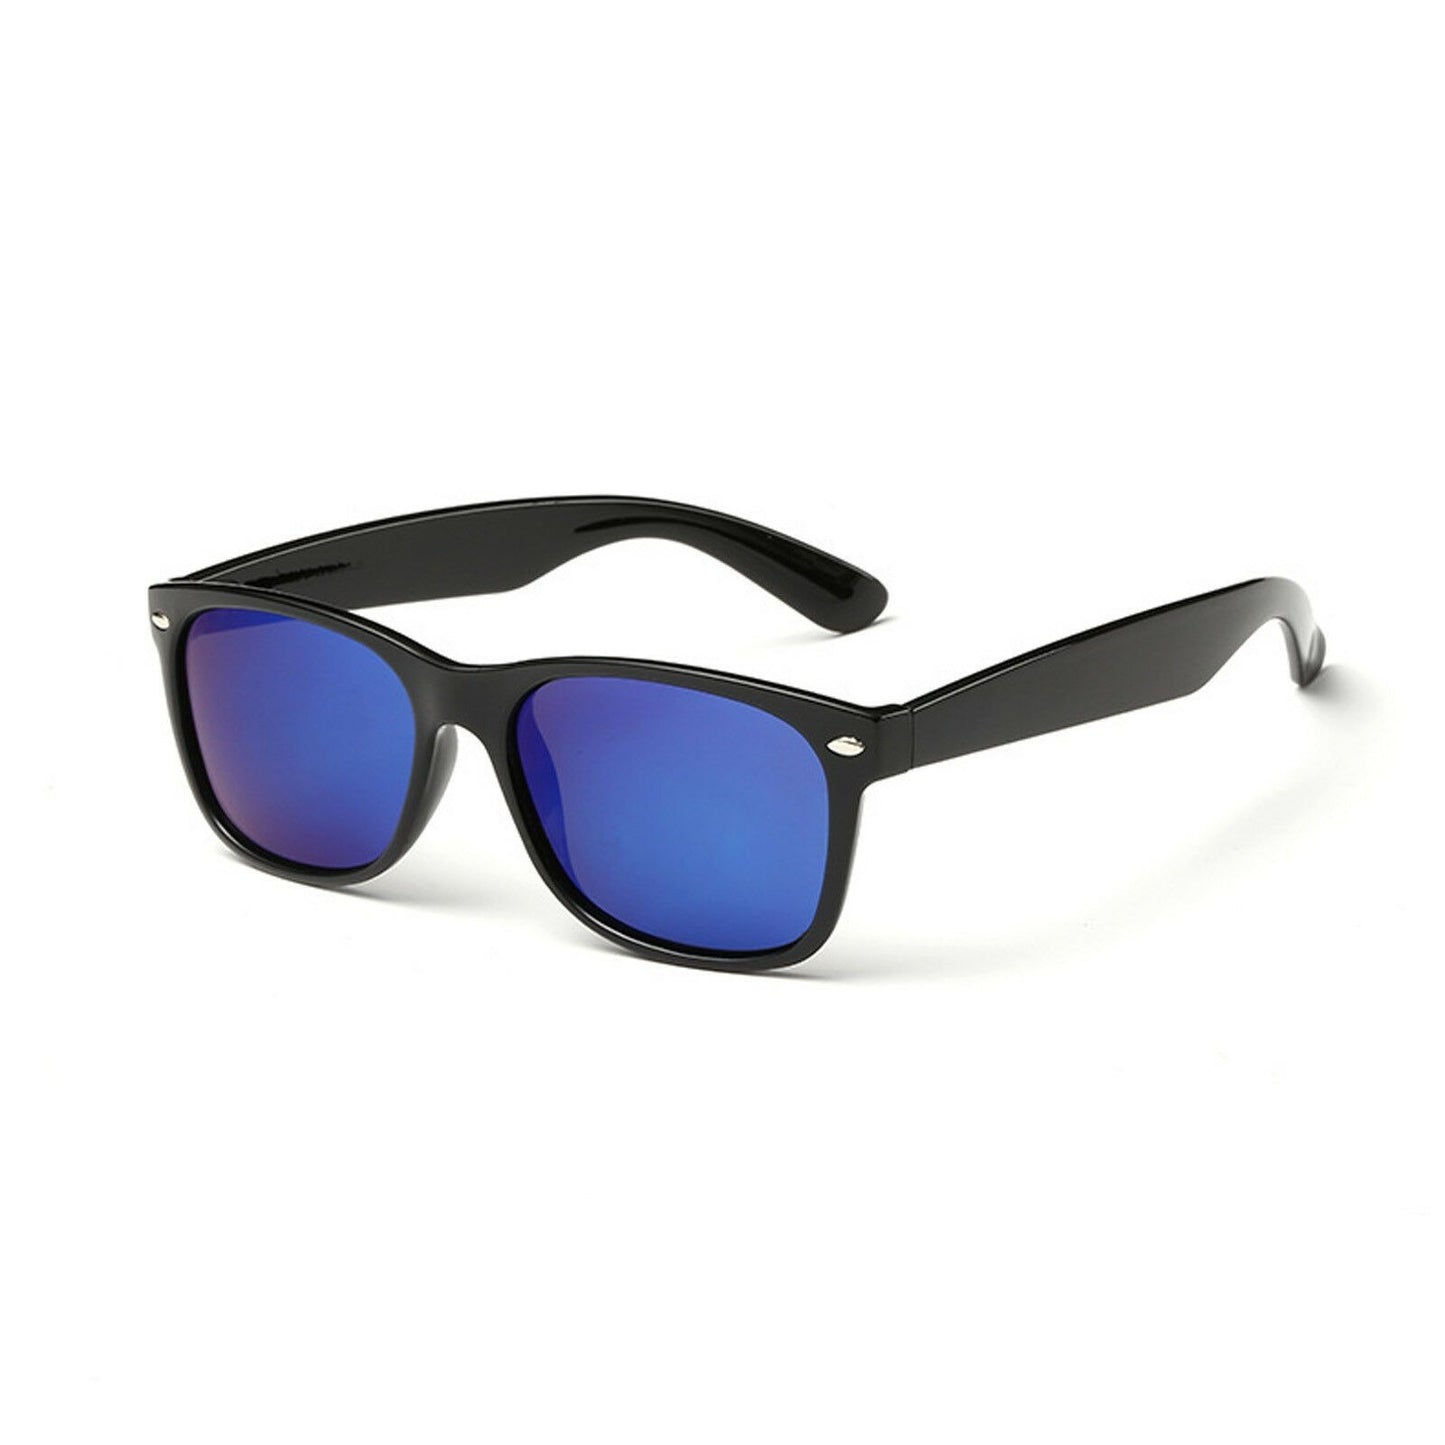 Sunglasses Stylish Mens Polarized Multi-Color Sports Fashion Eyewear Hardcase - Pantsnsox